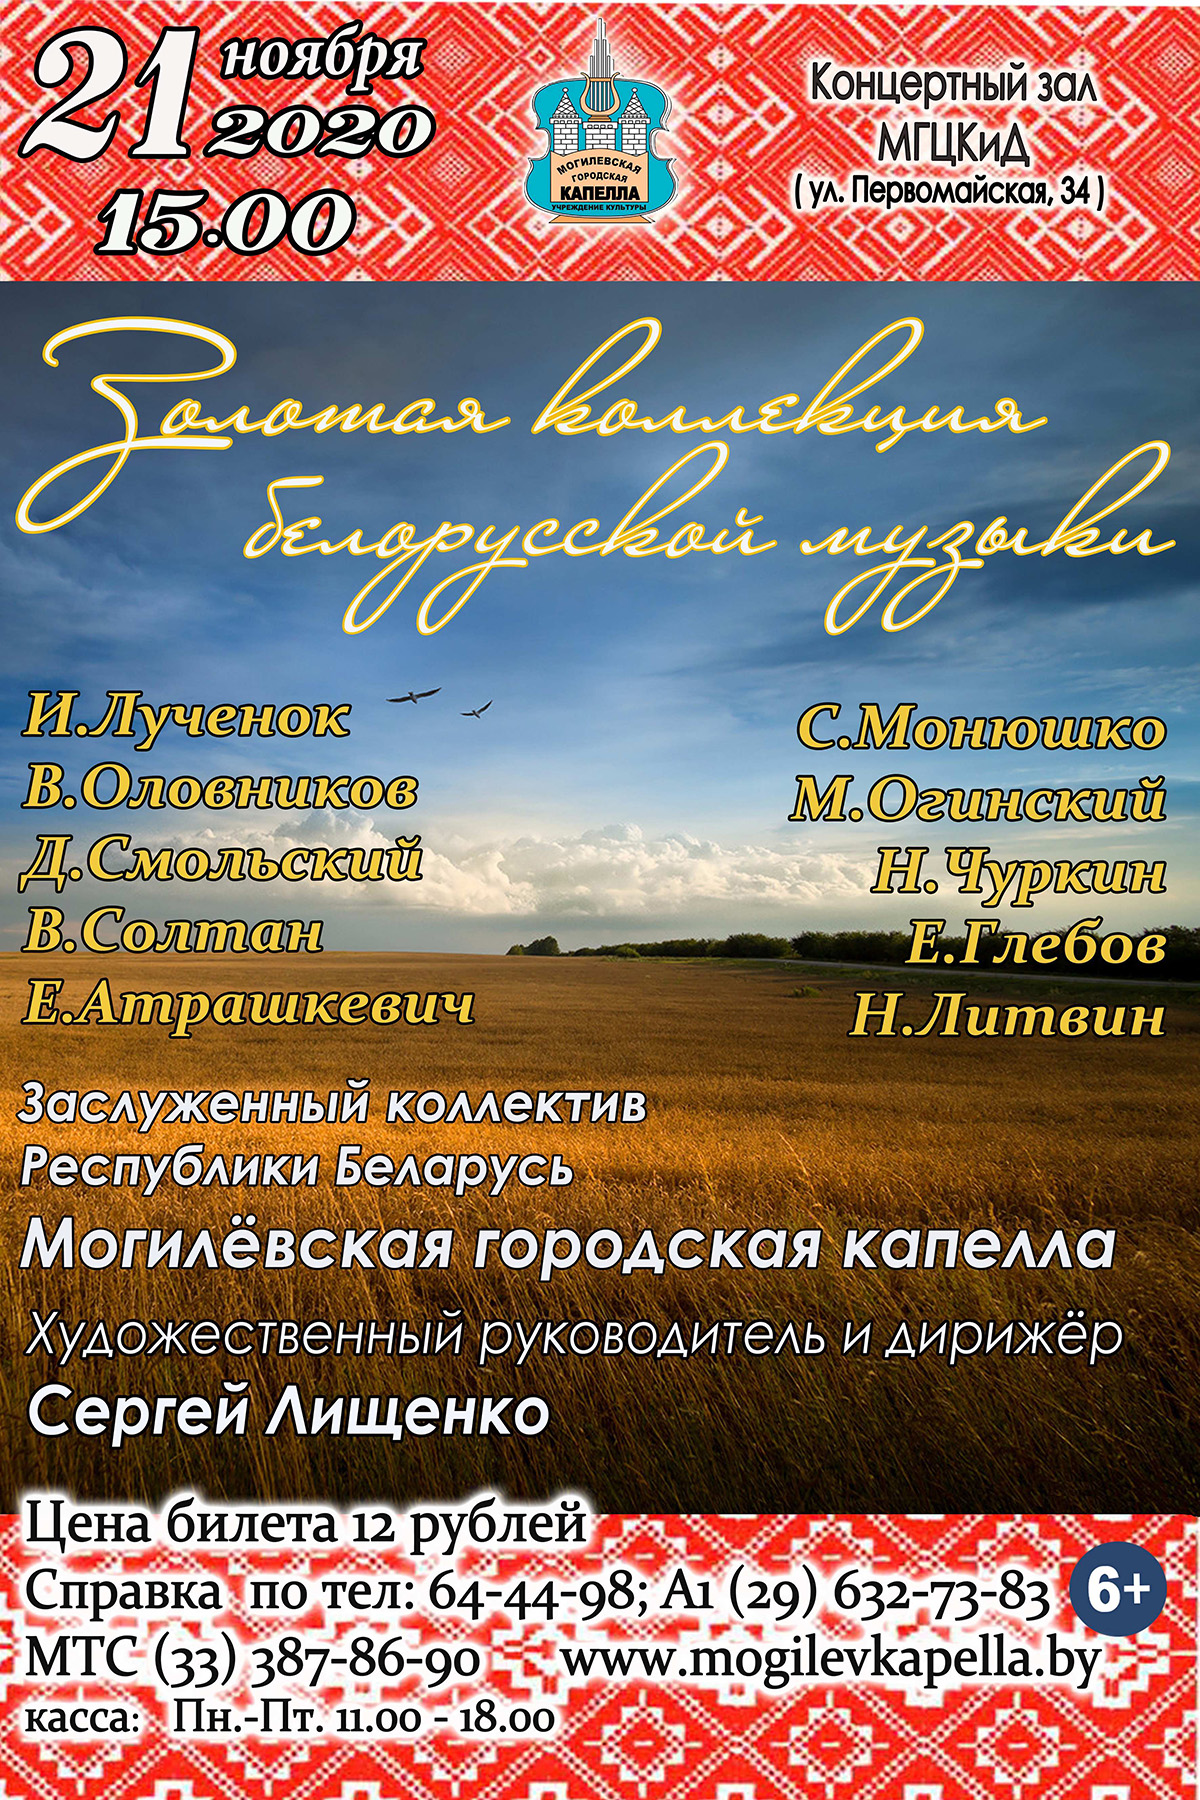 Программу «Золотая коллекция белорусской музыки» готовит Могилевская городская капелла